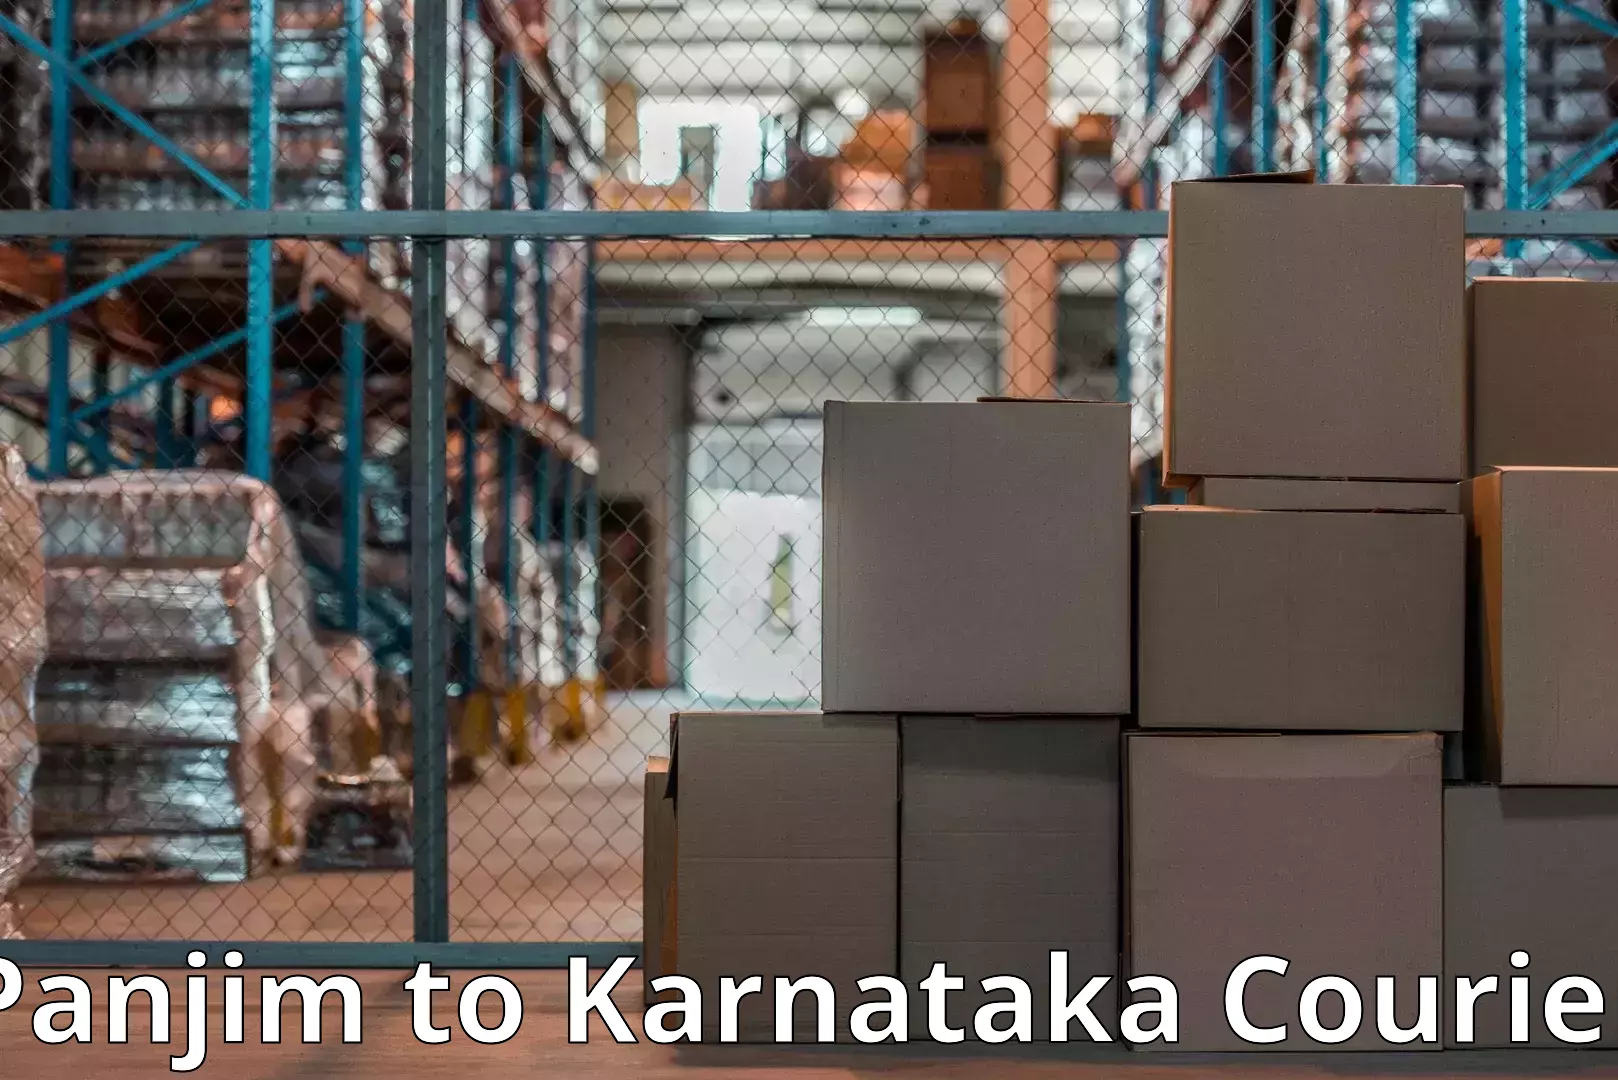 Efficient moving and packing Panjim to Karnataka